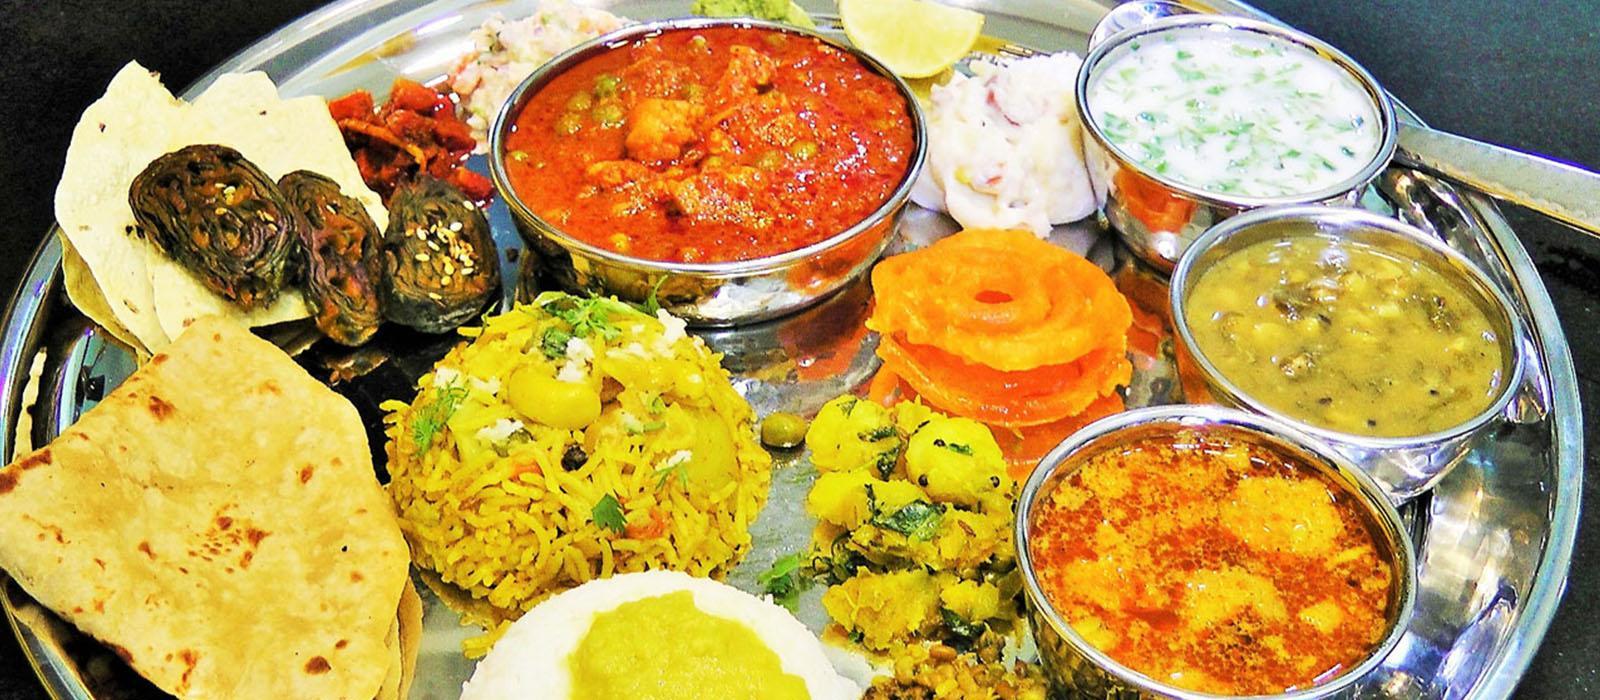 Cuisines of Maharashtra